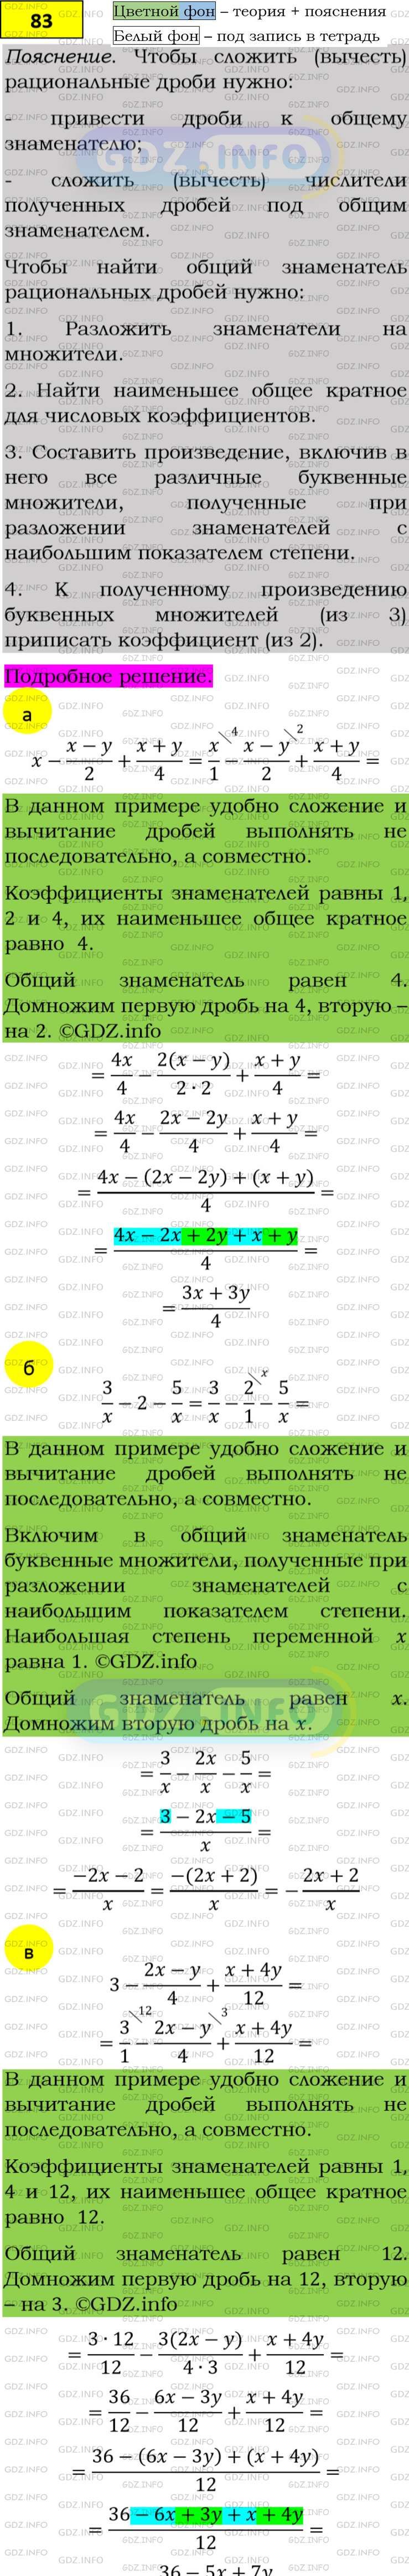 Фото подробного решения: Номер задания №83 из ГДЗ по Алгебре 8 класс: Макарычев Ю.Н.